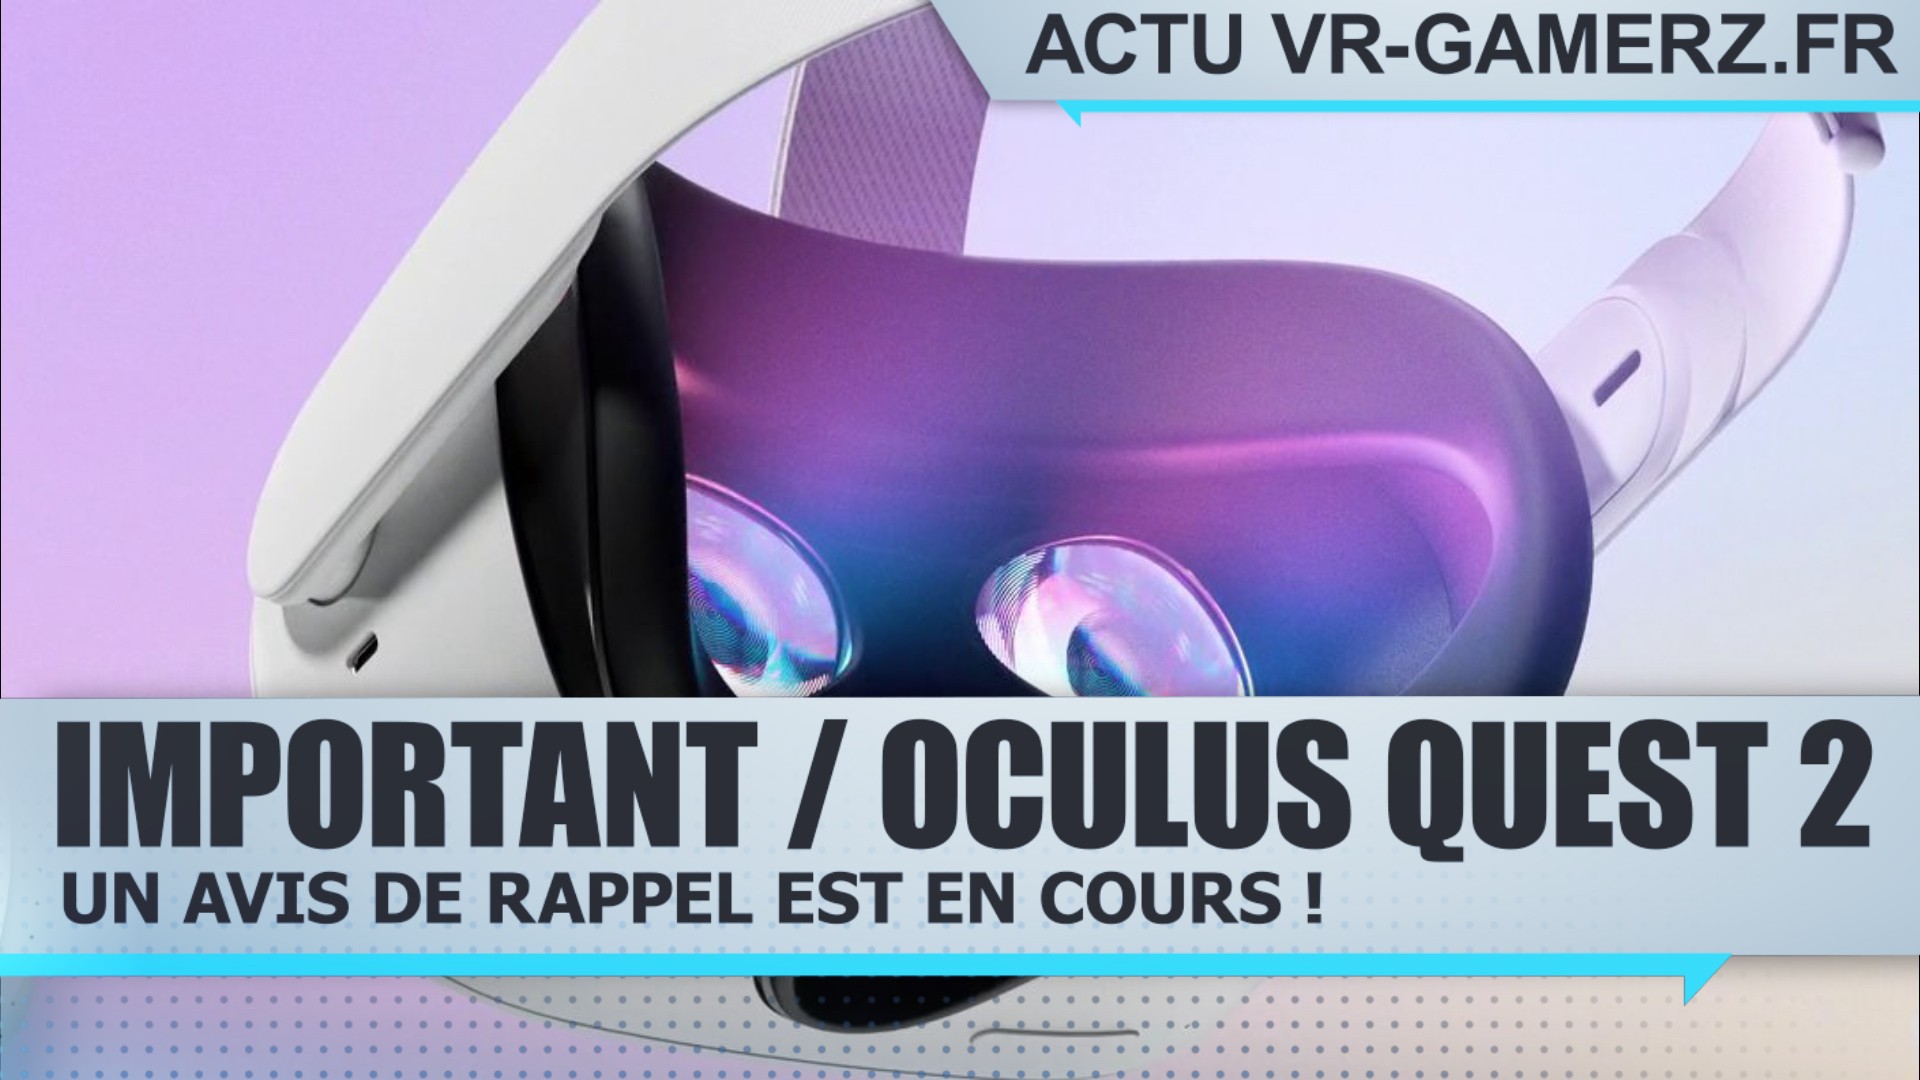 Avis de rappel concernant l’Oculus quest 2  !